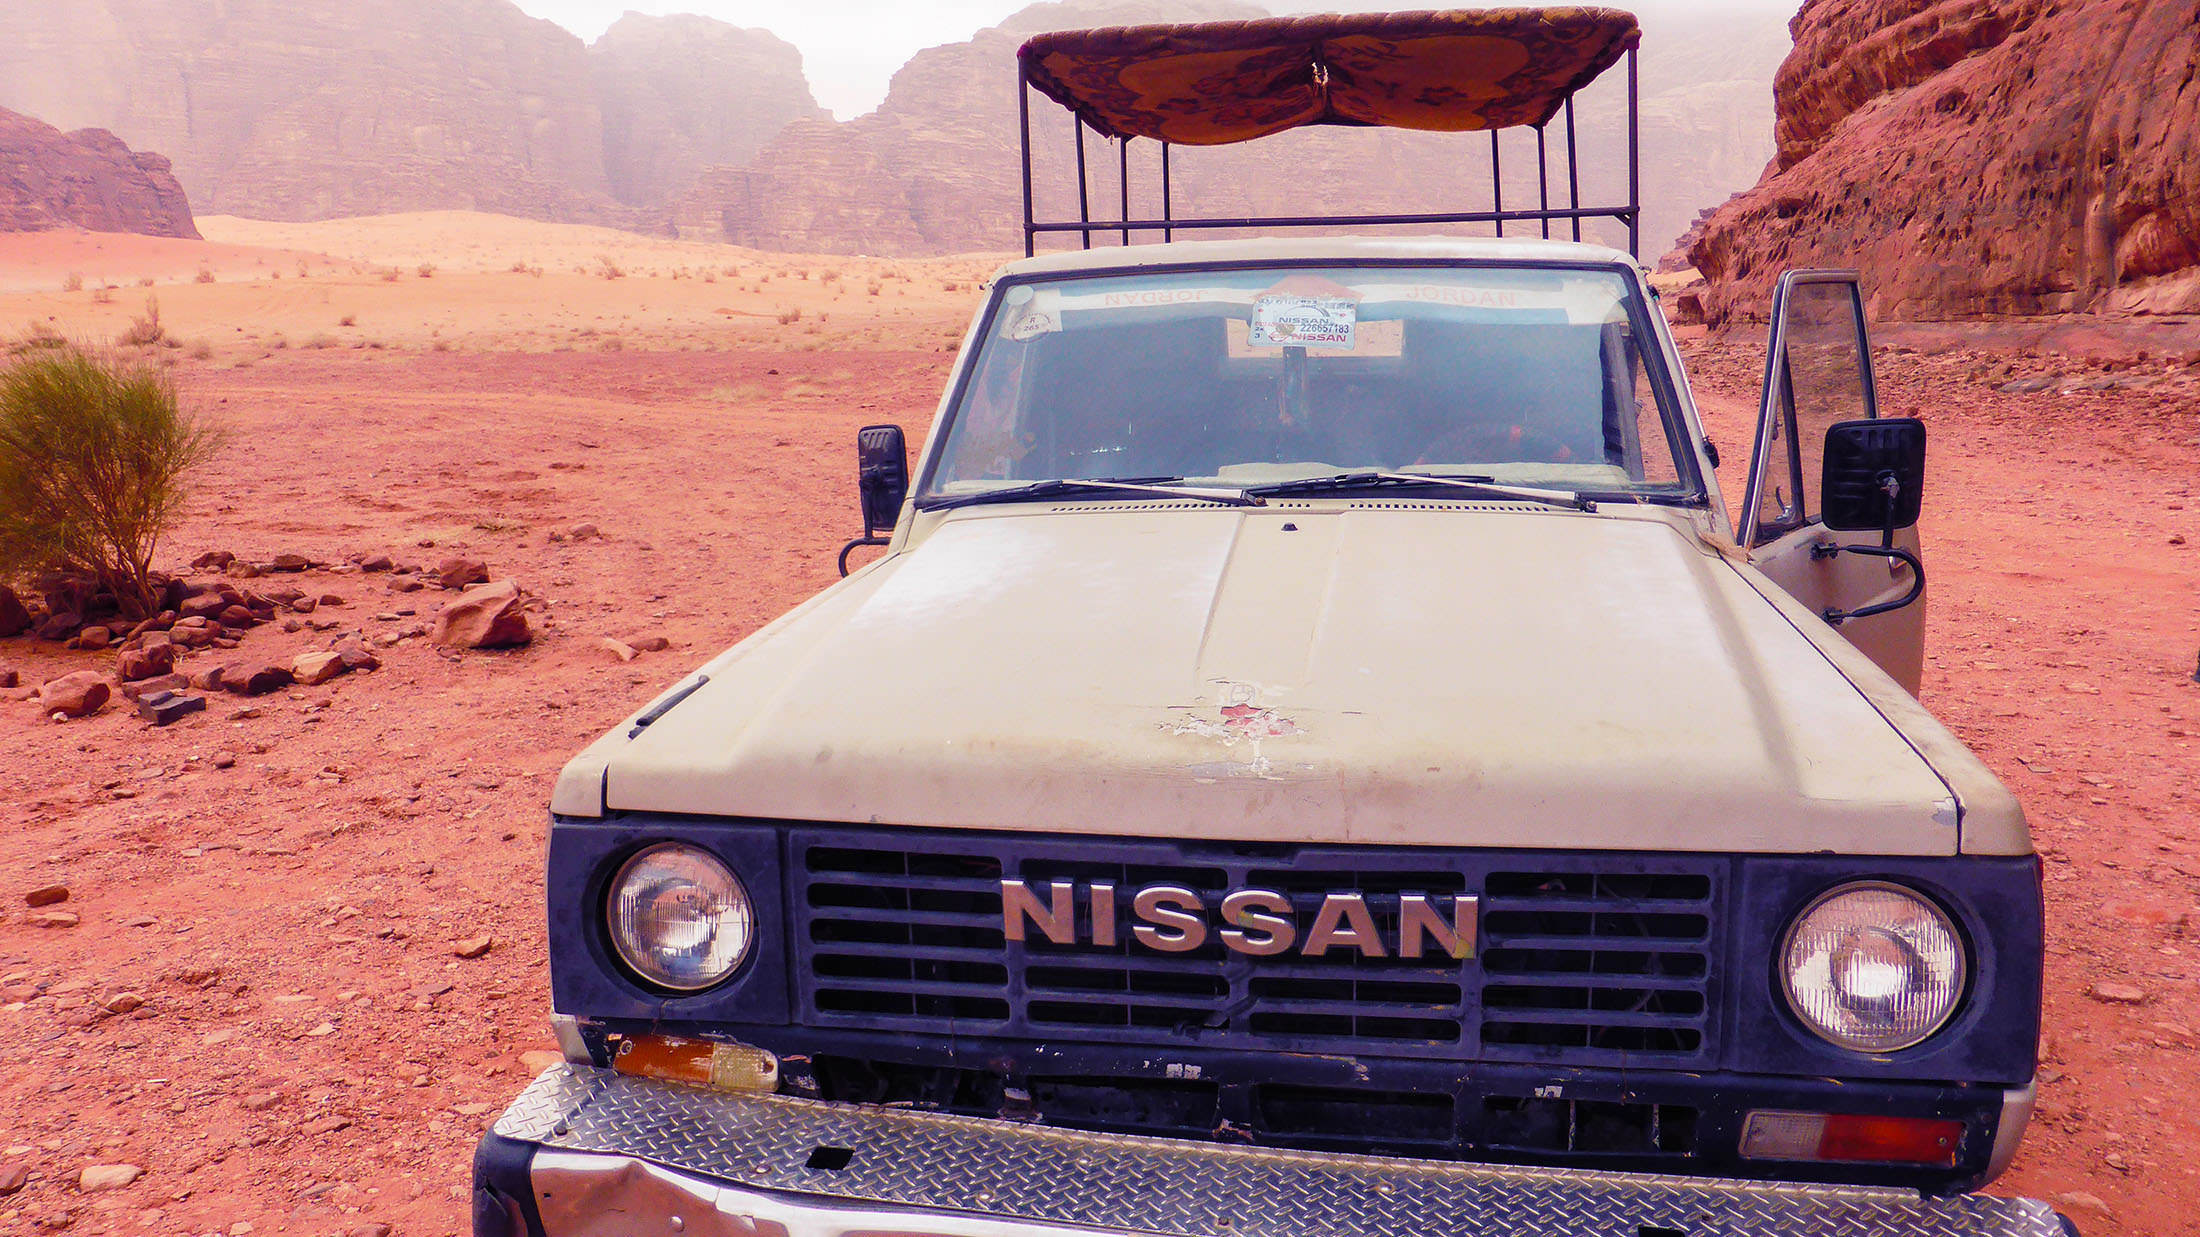 Nissan ute in Wadi Rum Jordan